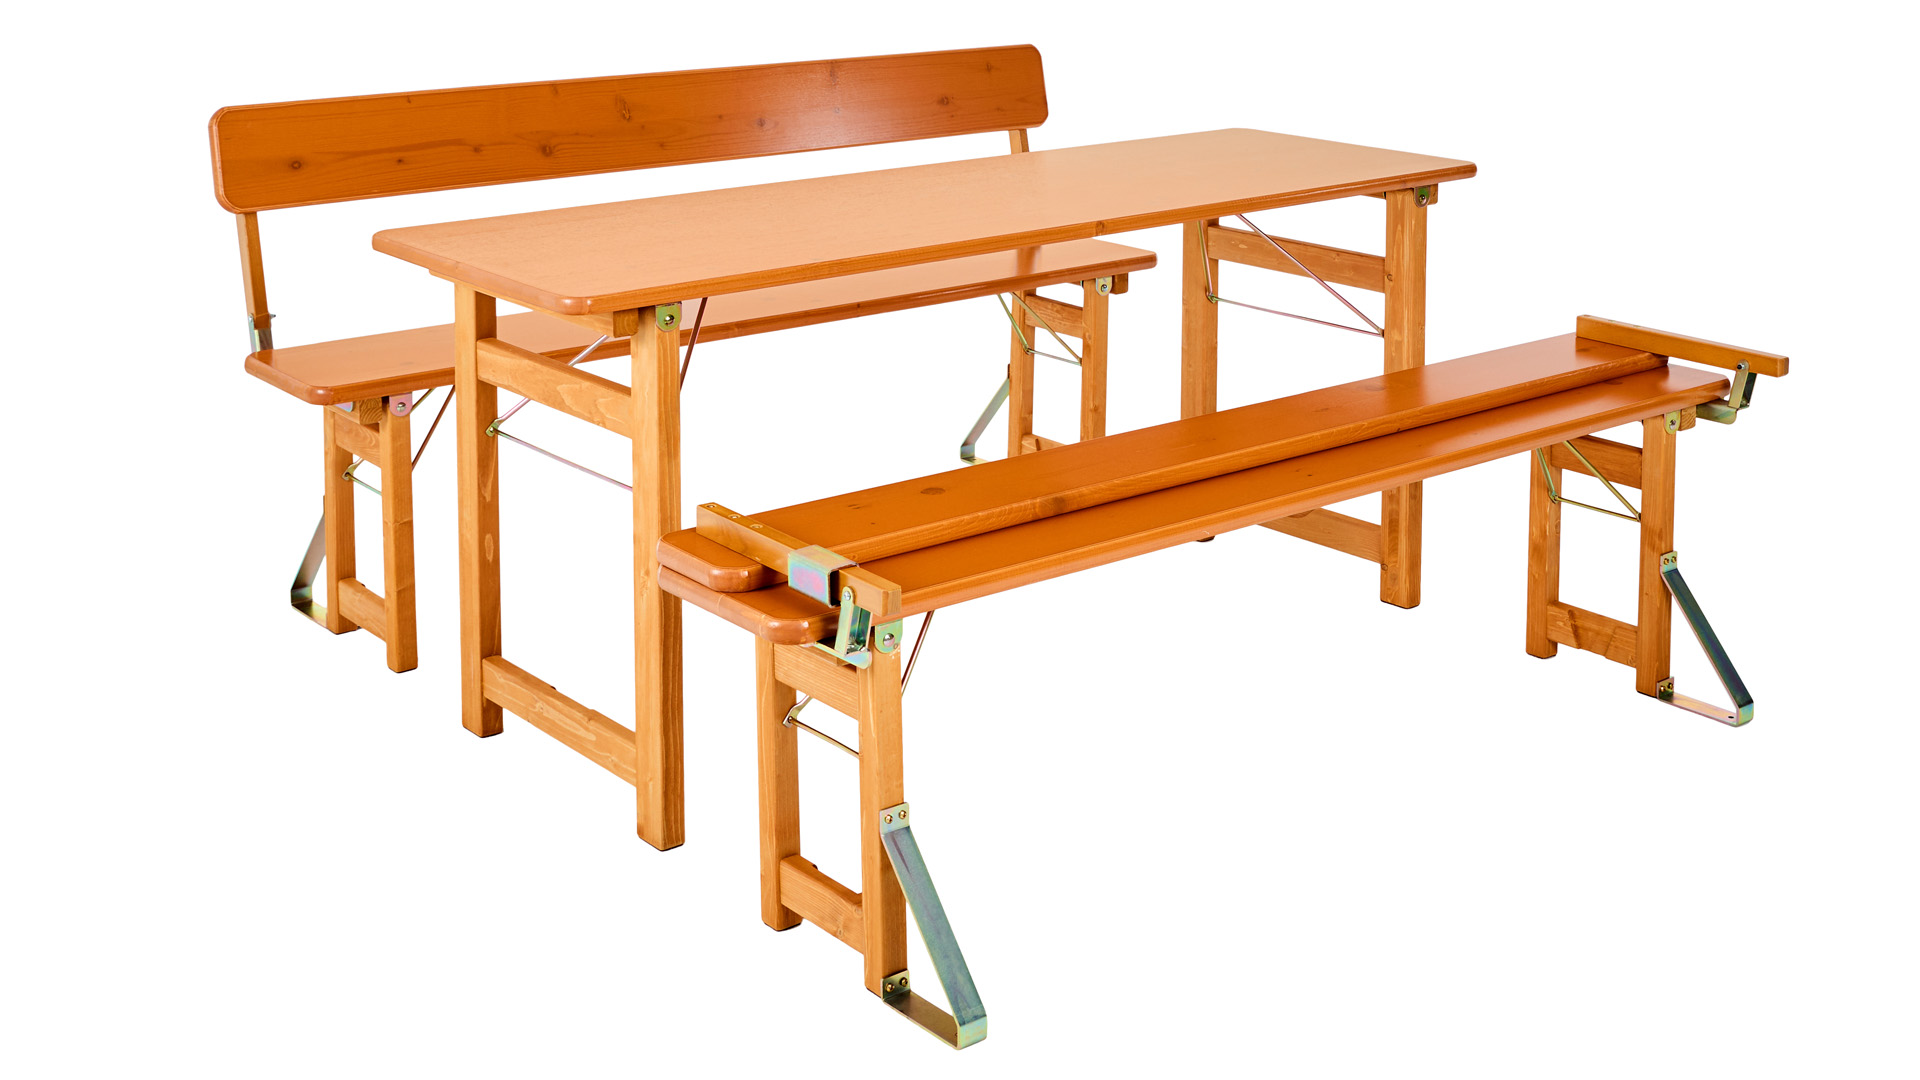 Die Designgarnitur Rustica bestehend aus Tisch und zwei Bänken mit Lehne, wobei eine Lehne zugeklappt ist.